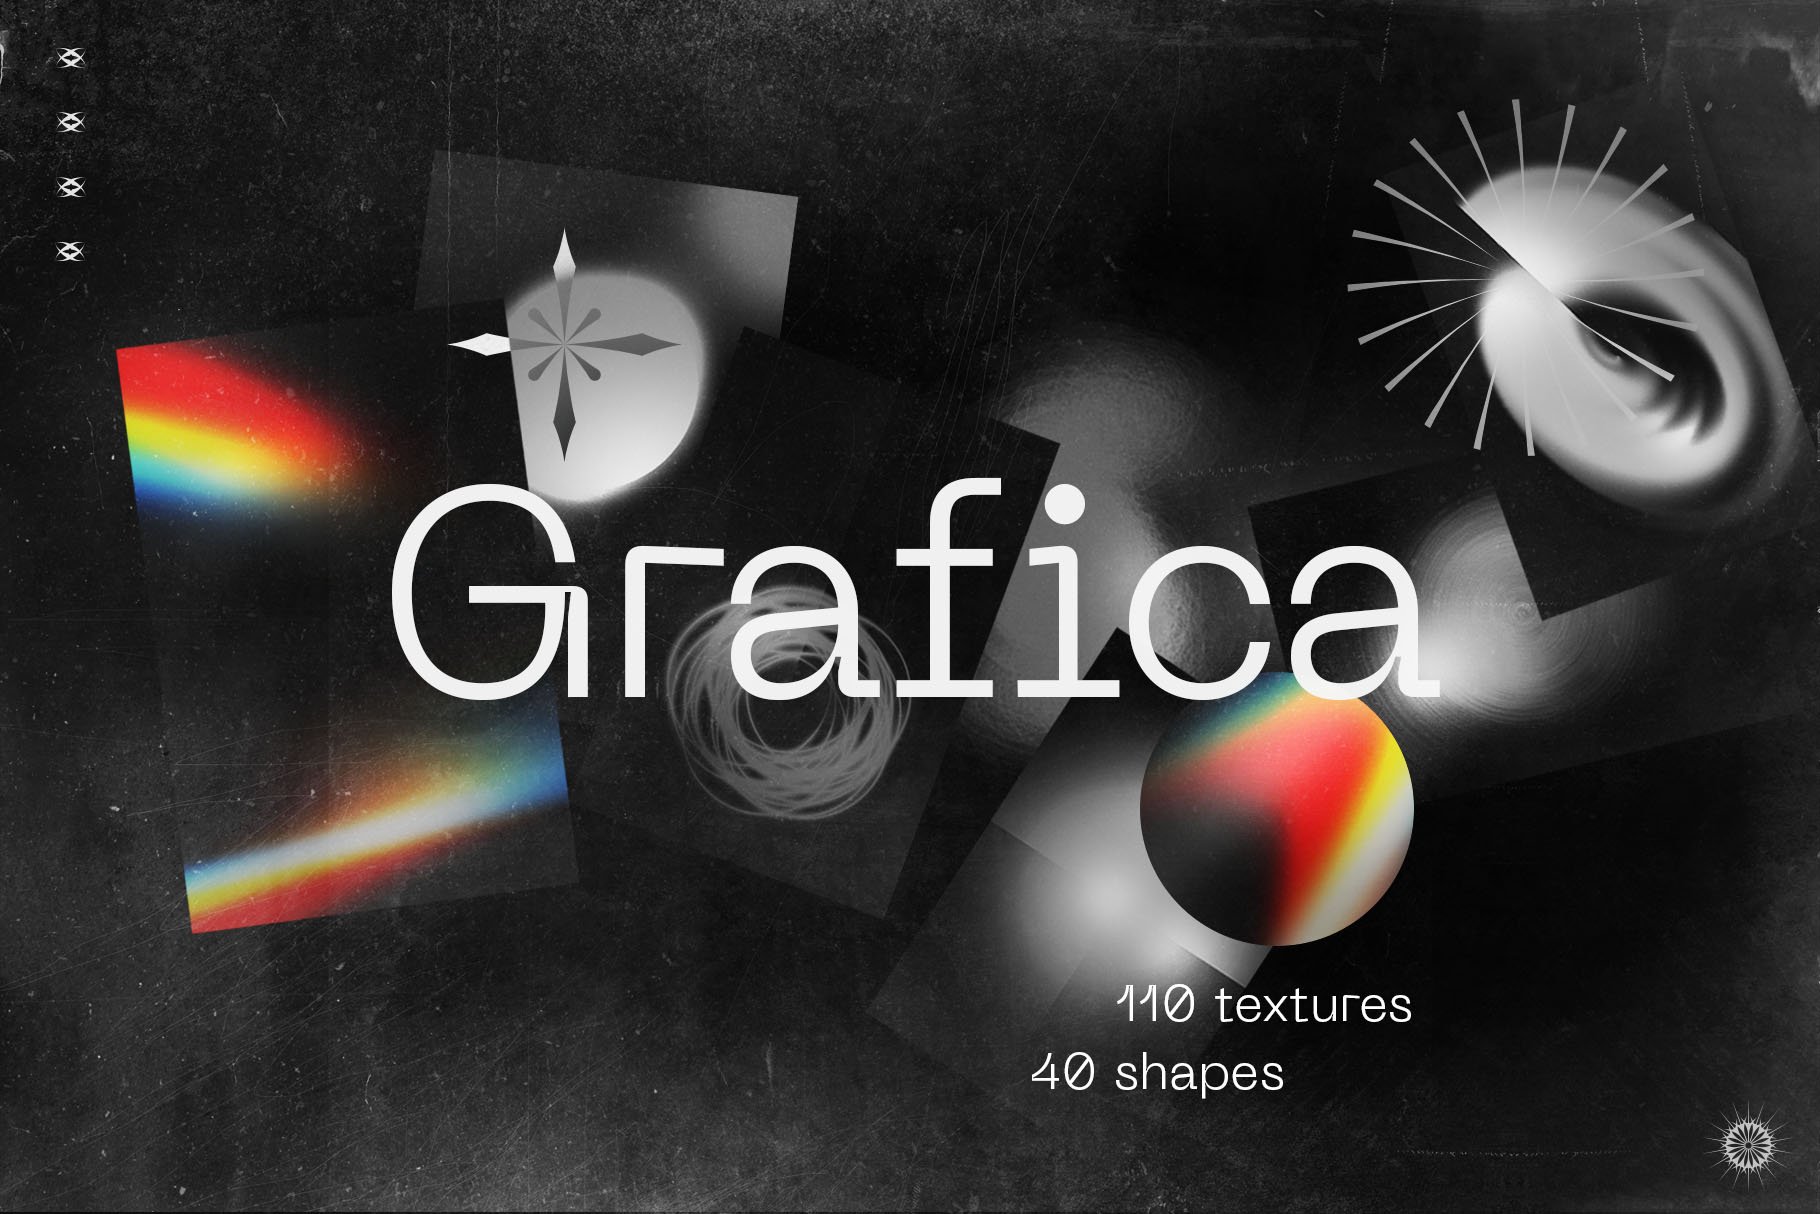 Grafica 150个充满活力的抽象渐变纹理和形状素材和笔刷素材 图片素材 第1张